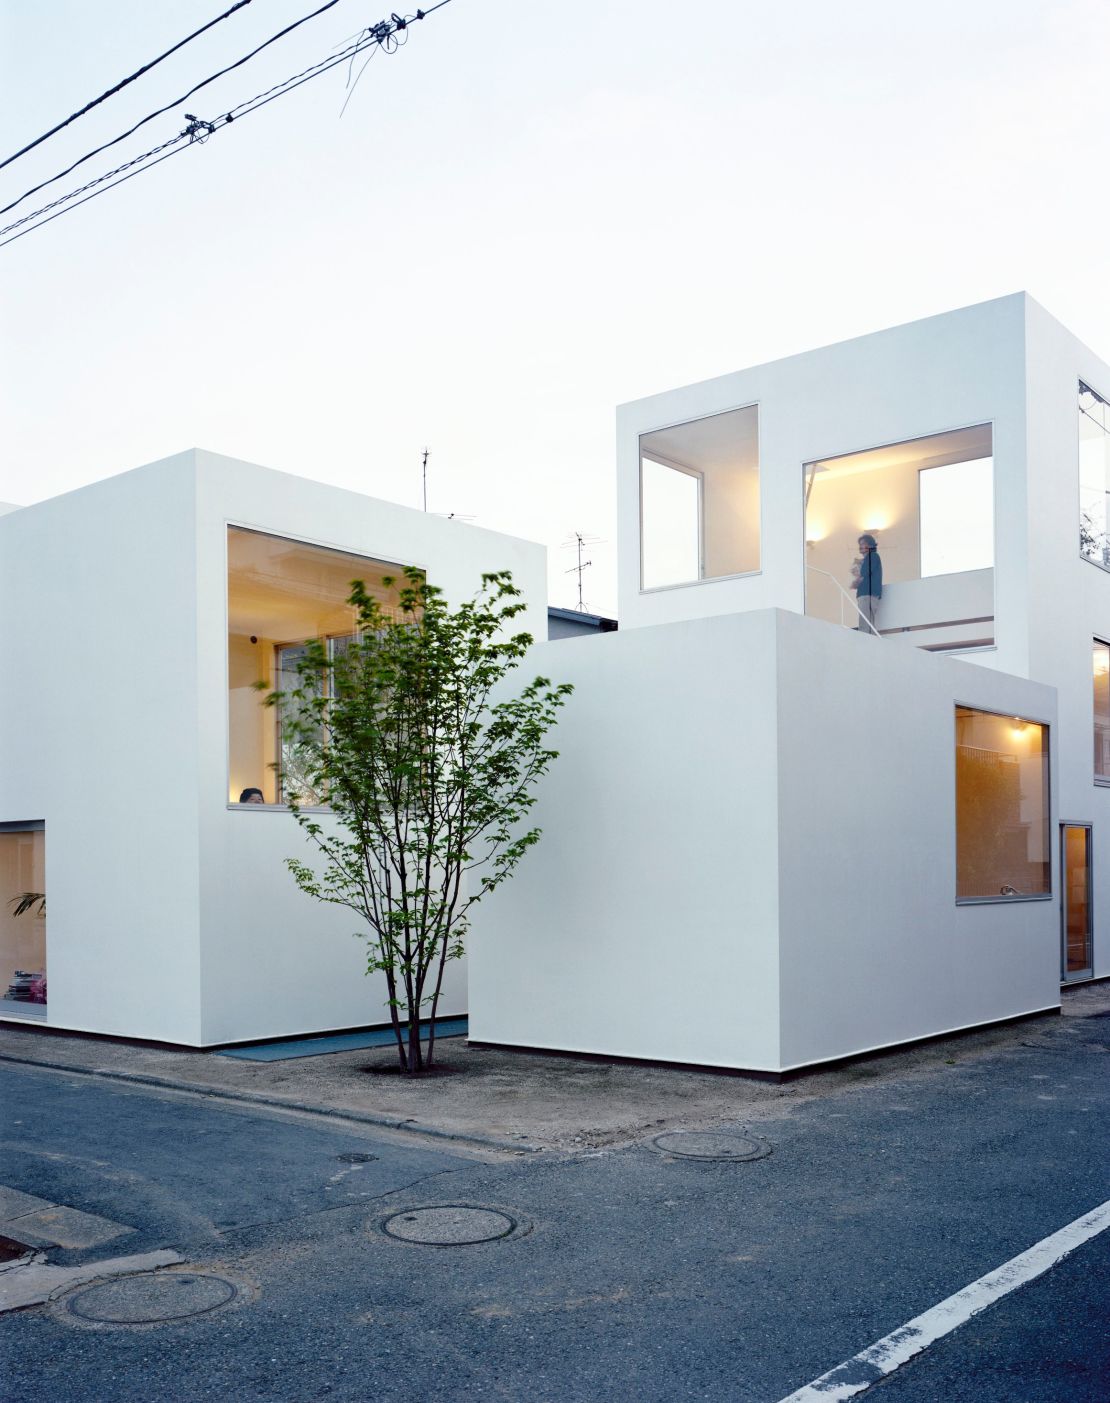 Moriyama House (2005) by Ryue Nishizawa